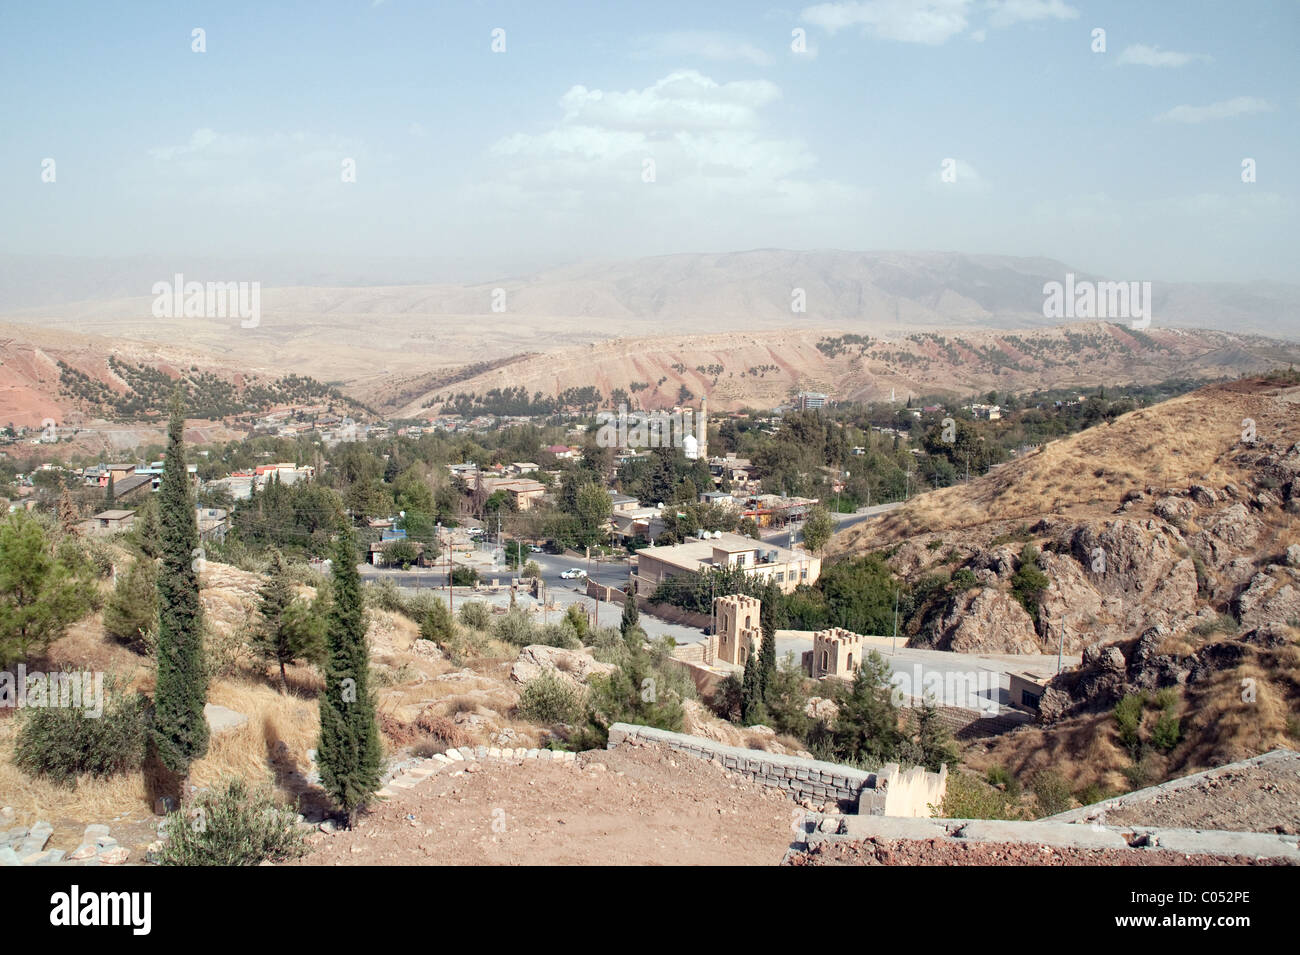 La ville mixte syriaque et kurde de Shaqlawa dans les montagnes Zagros et la région du Kurdistan dans le nord de l'Irak. Banque D'Images